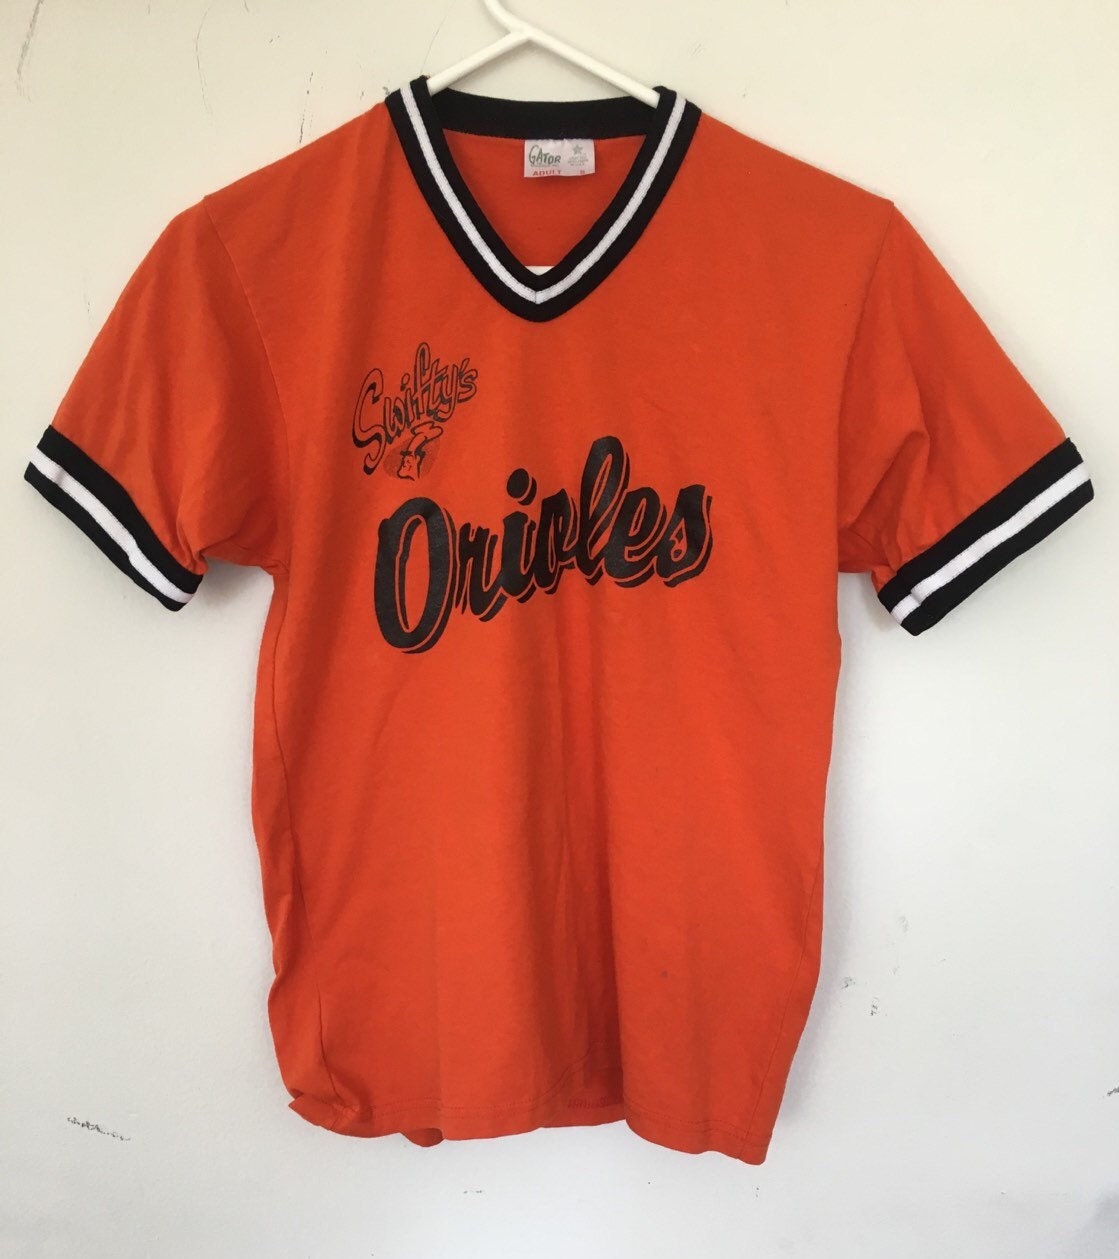 Vintage Orioles t-shirt